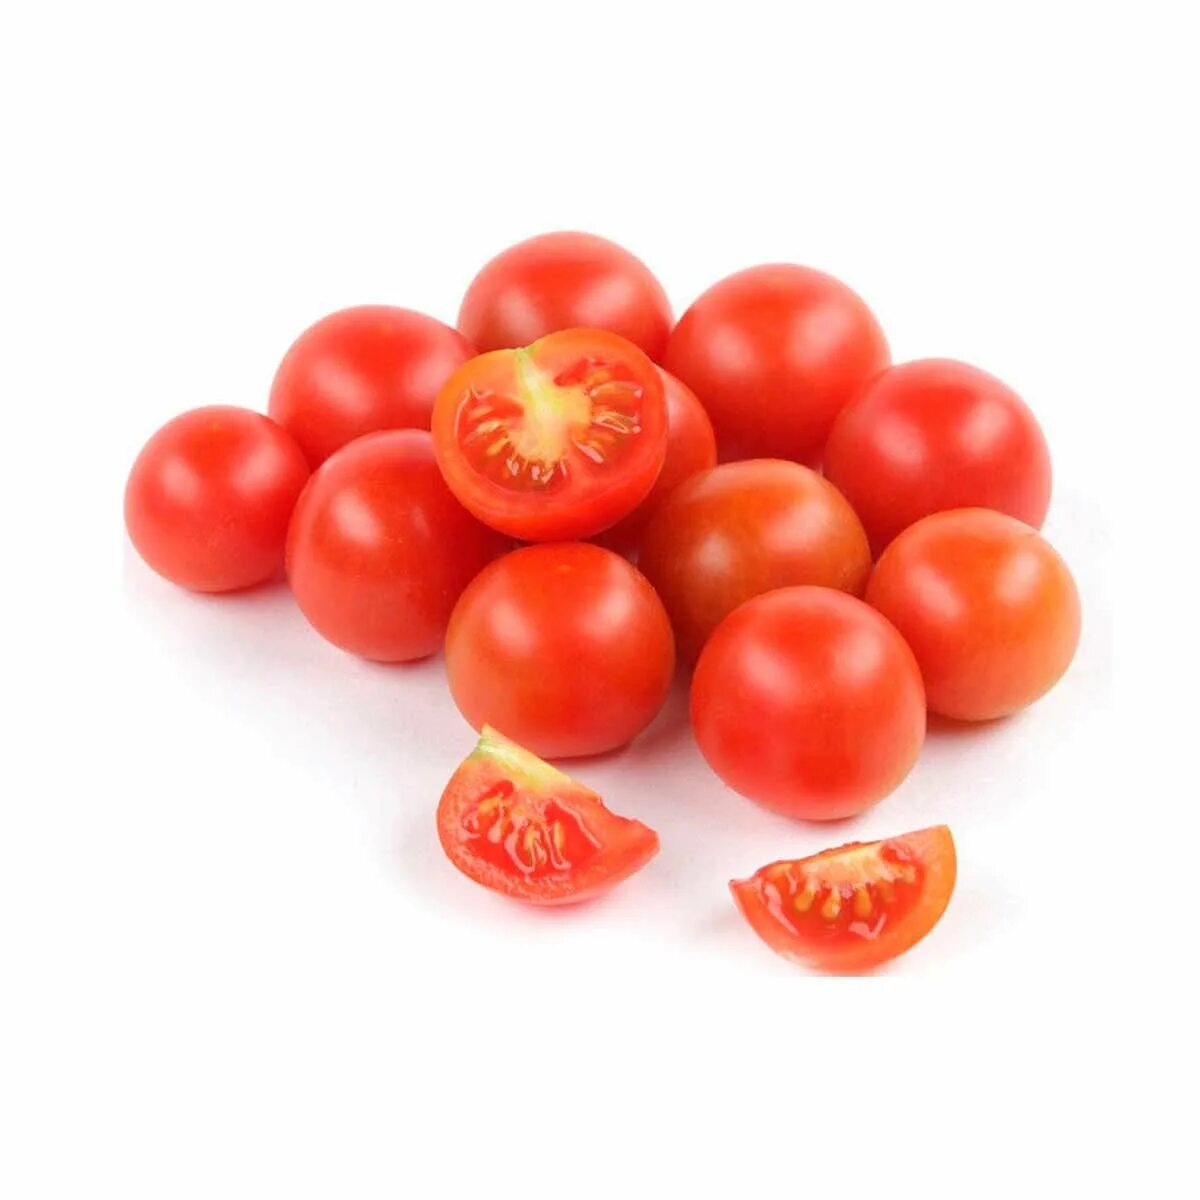 Кг томаты 1 кг. Томаты черри. Помидор черри 1. Делишер черри томат.